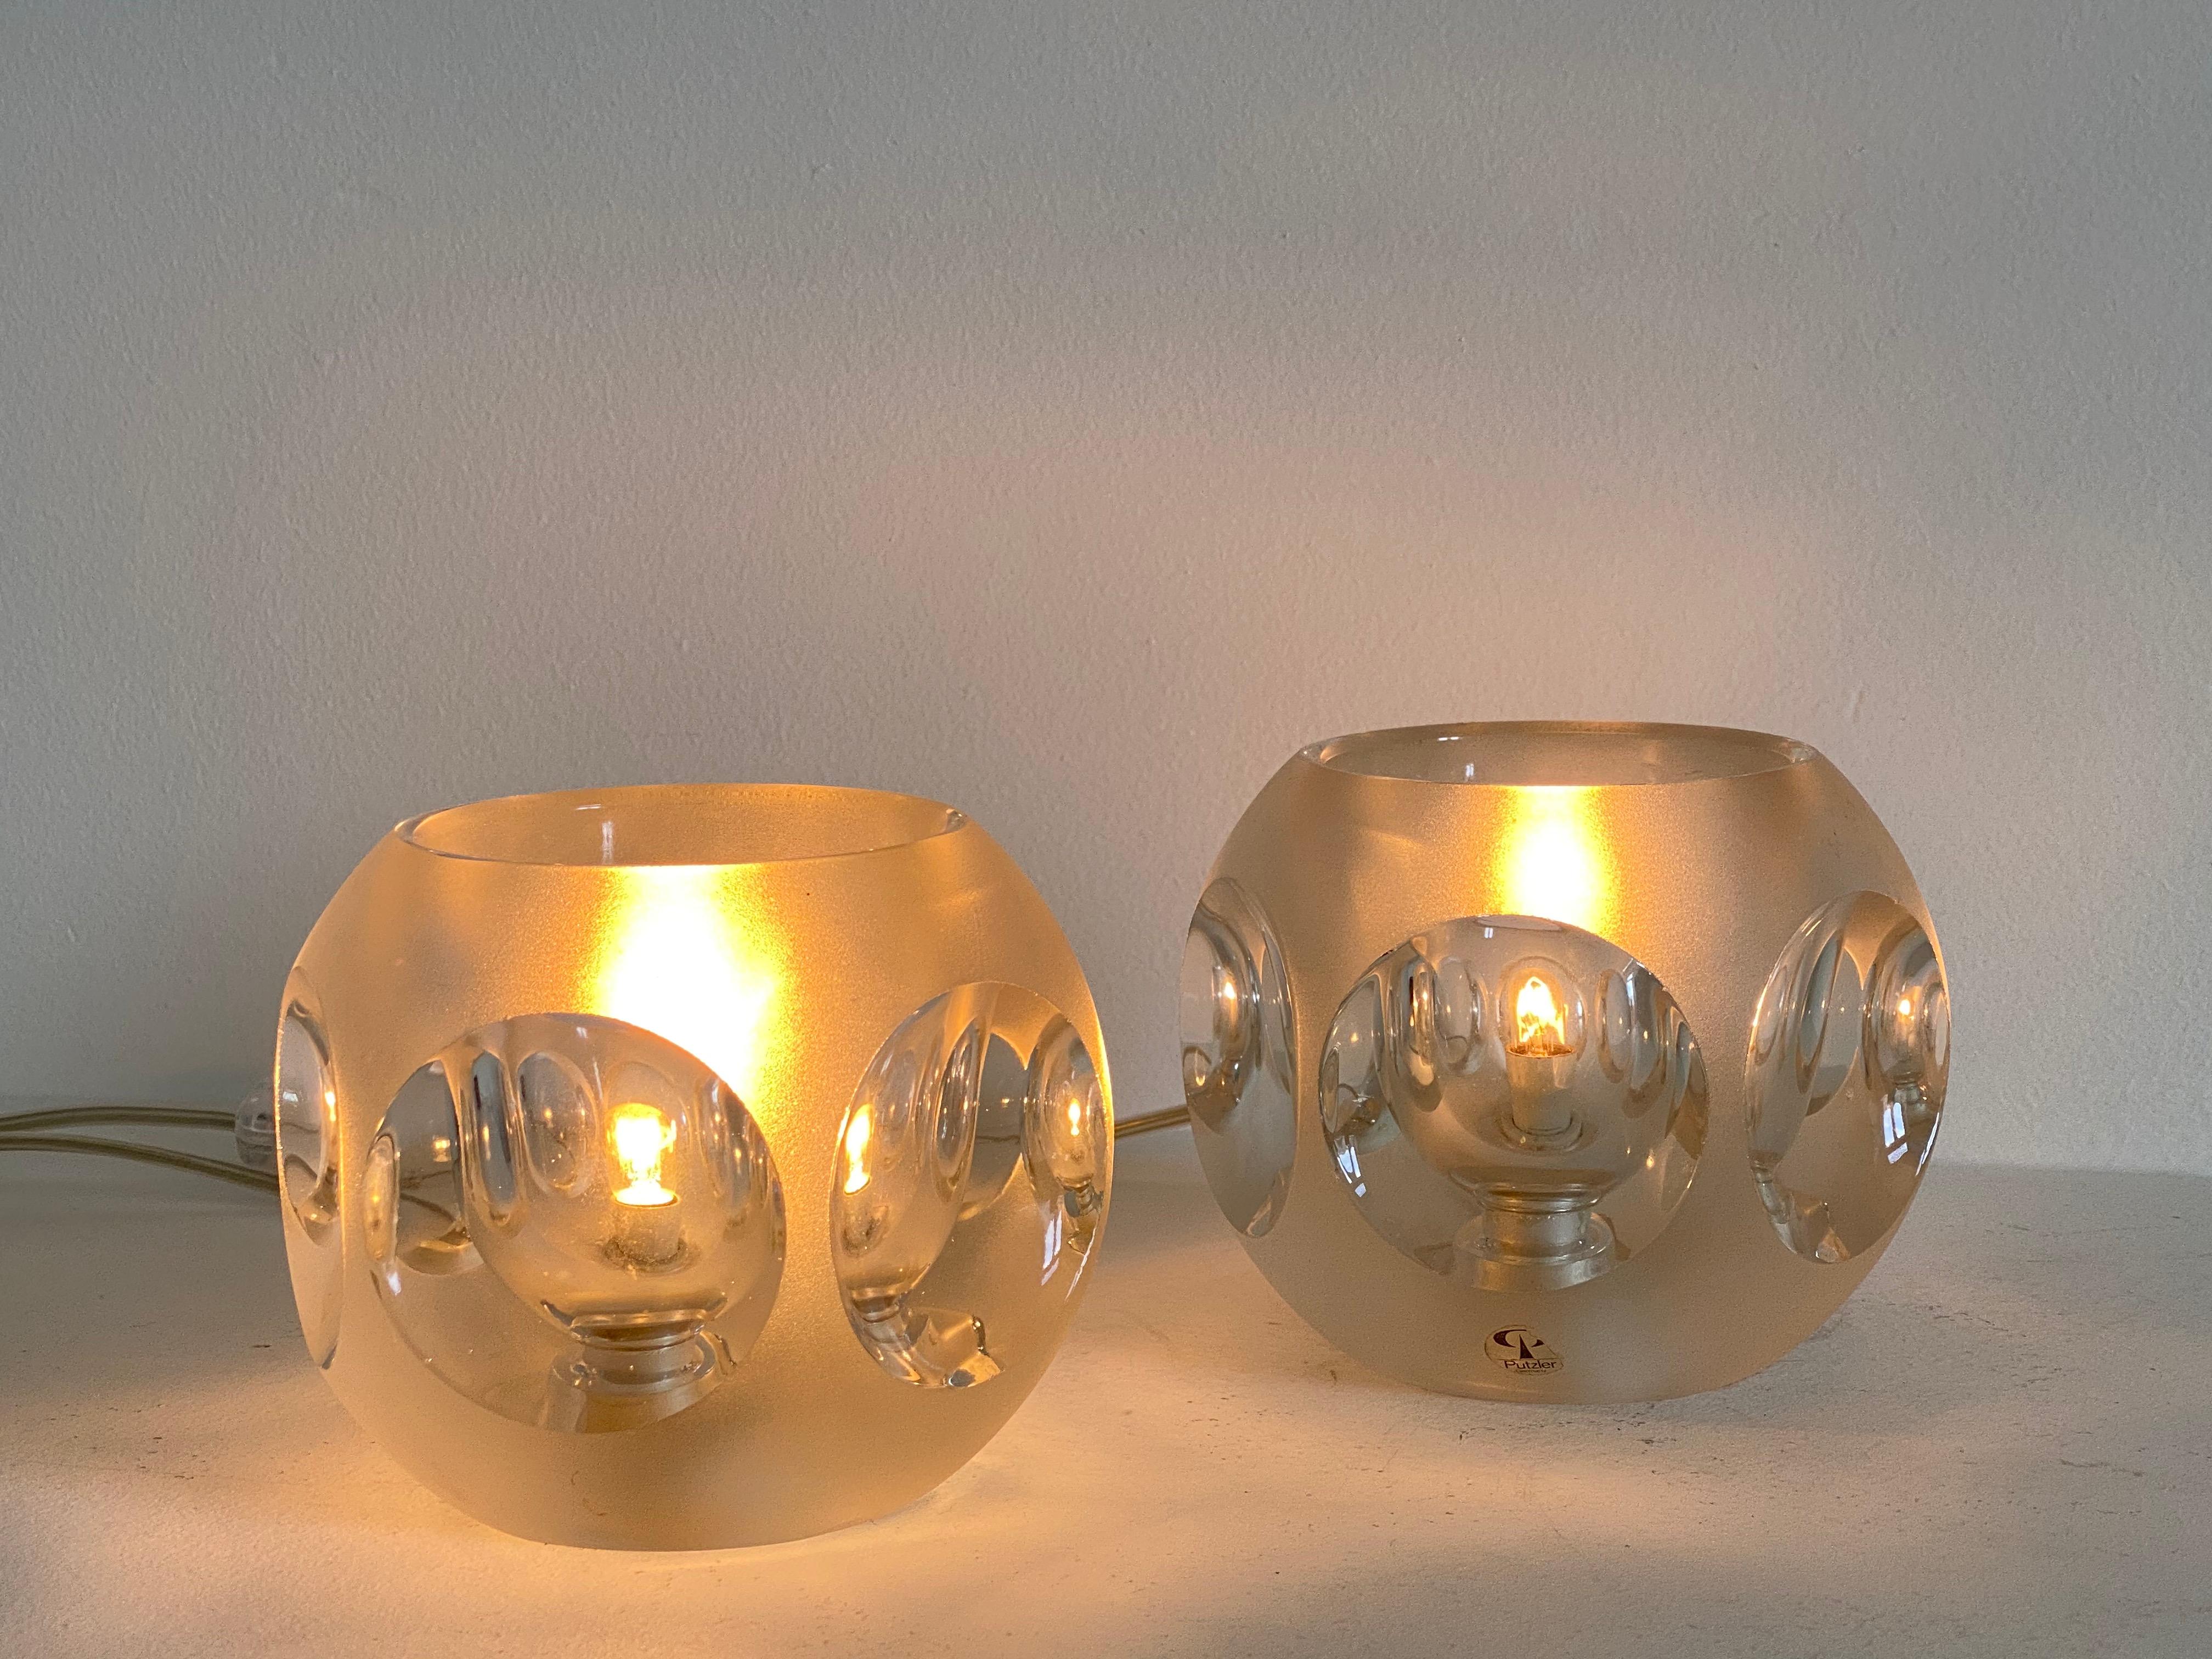 Ensemble de 2 lampes de table en verre transparent de Peill & Puzzler, 1970
entièrement fonctionnel,
marqués avec le Label d'origine.